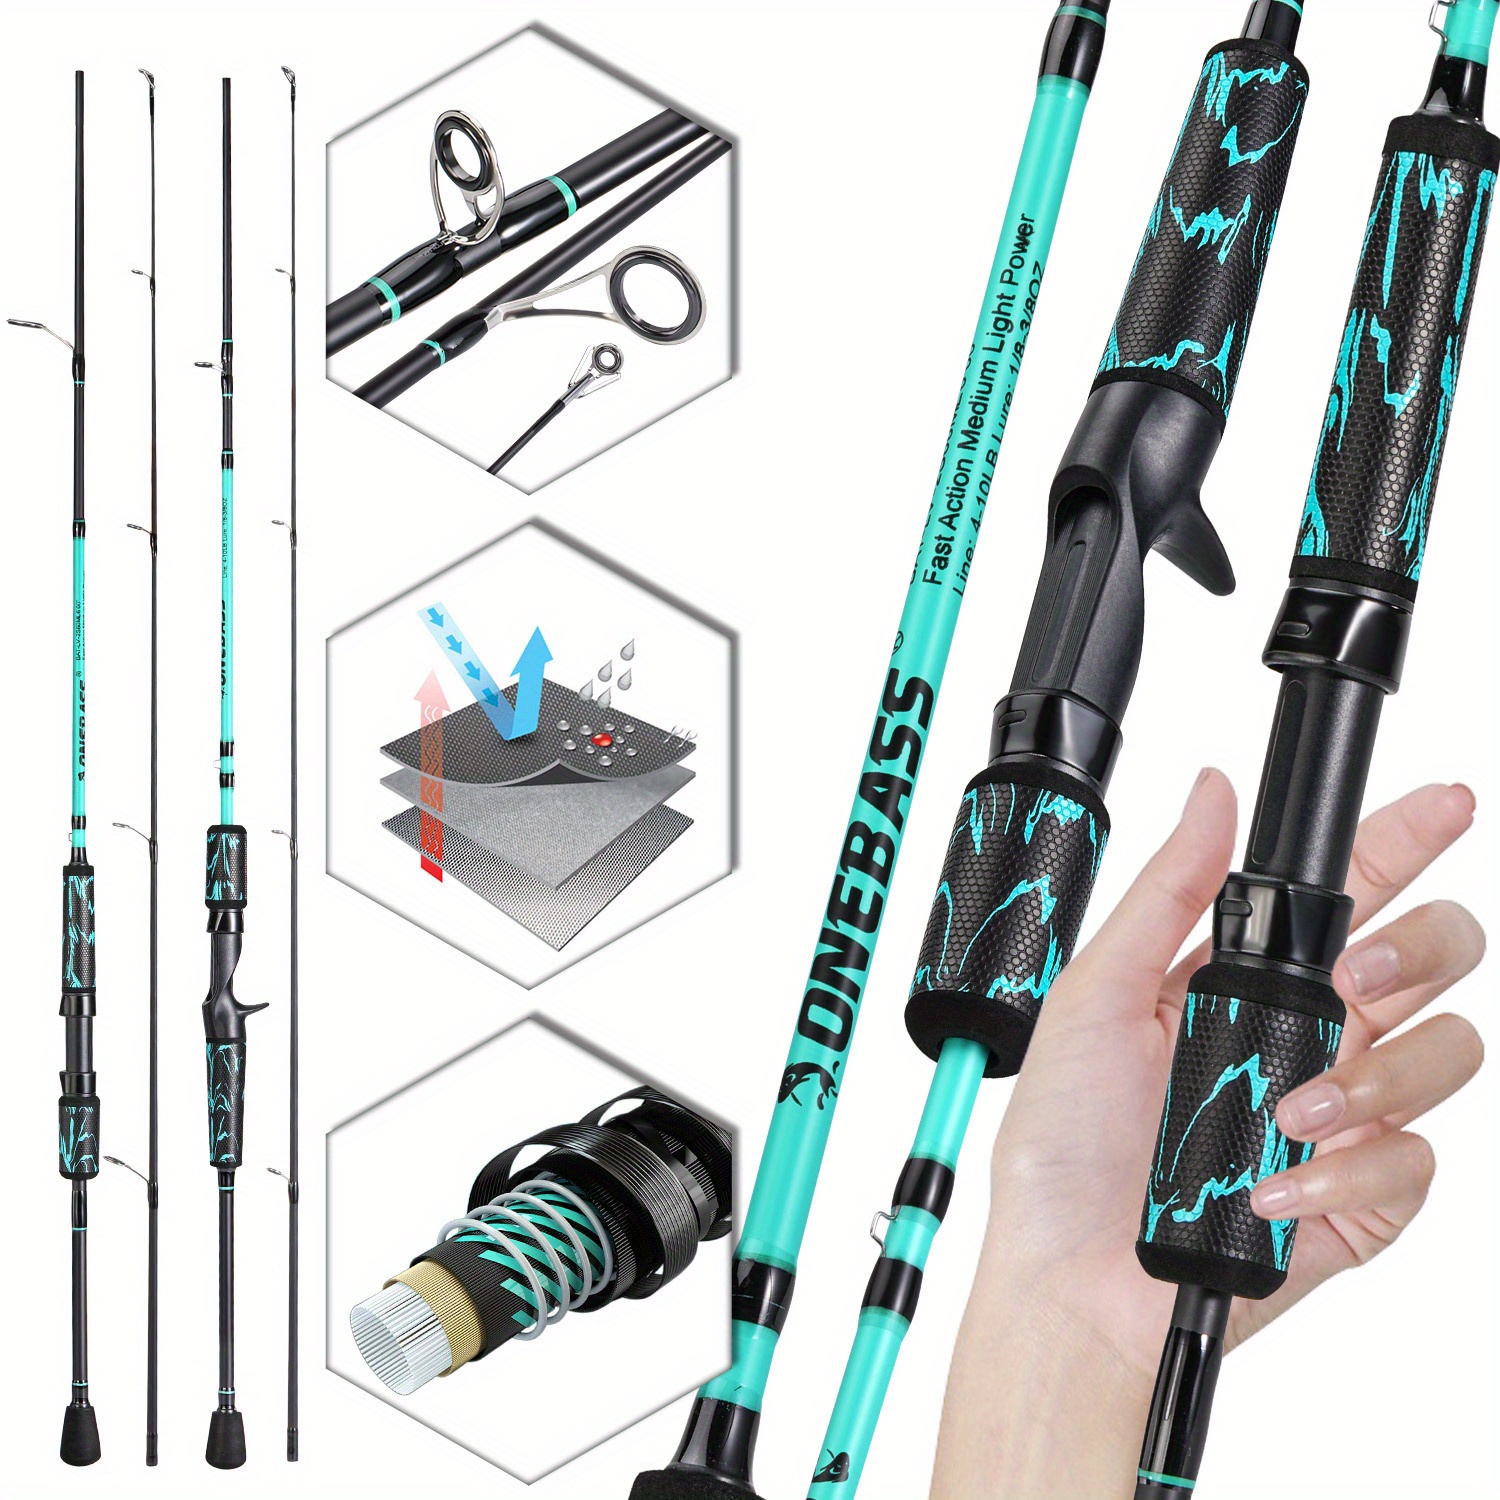  Fishing Pole, 30-Ton Carbon Fiber Fishing Rod And